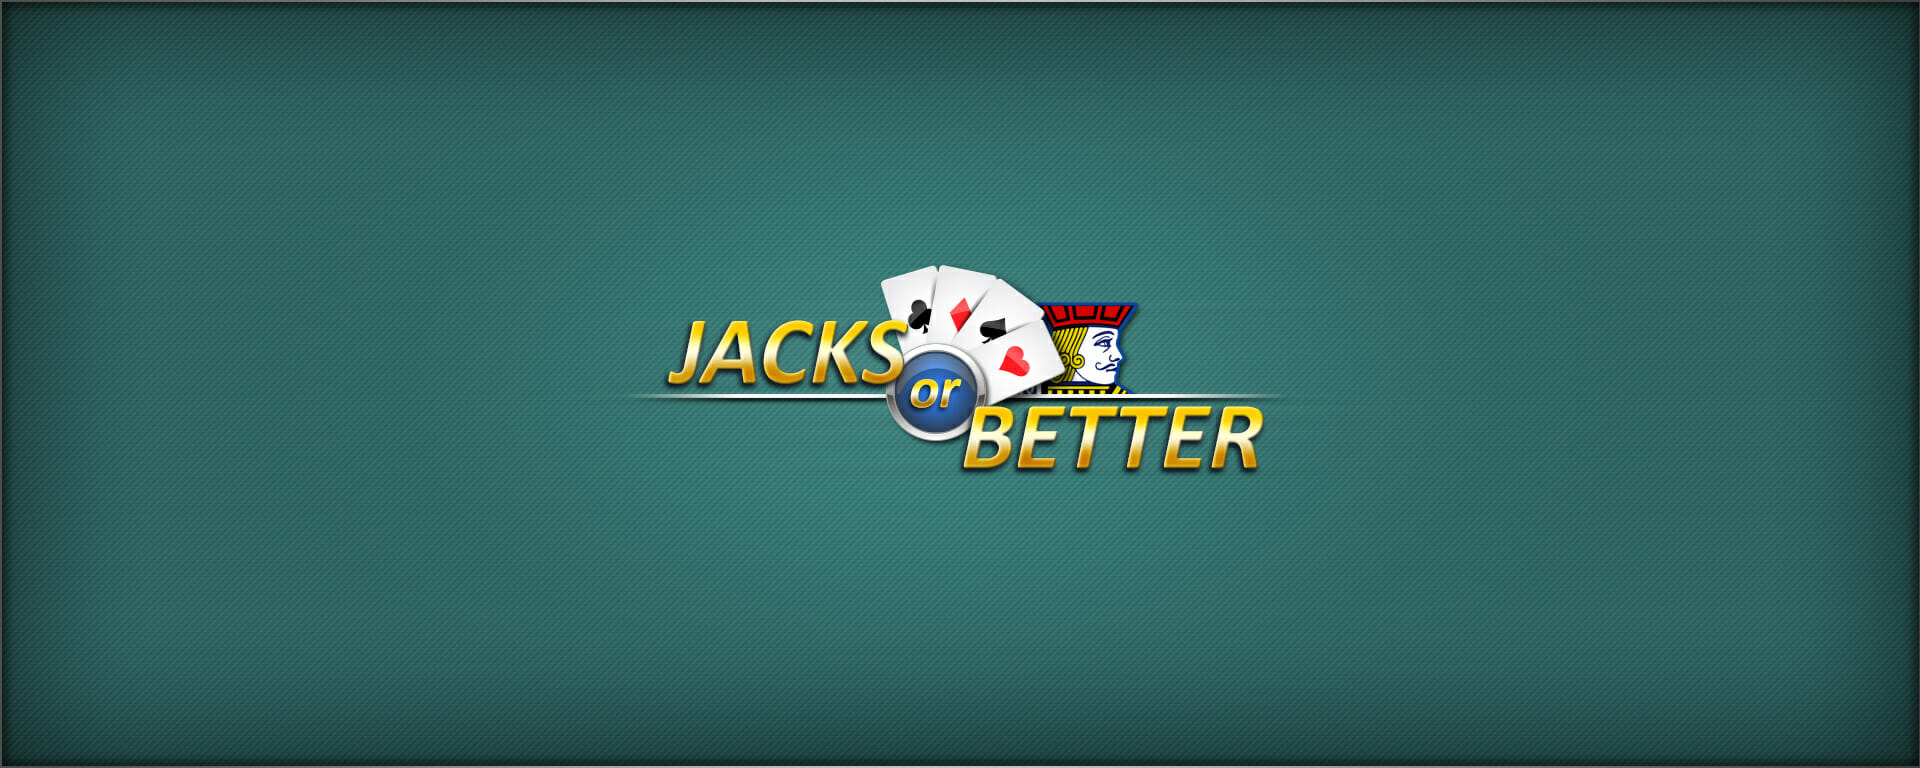 VideoPoker Jacks or Better